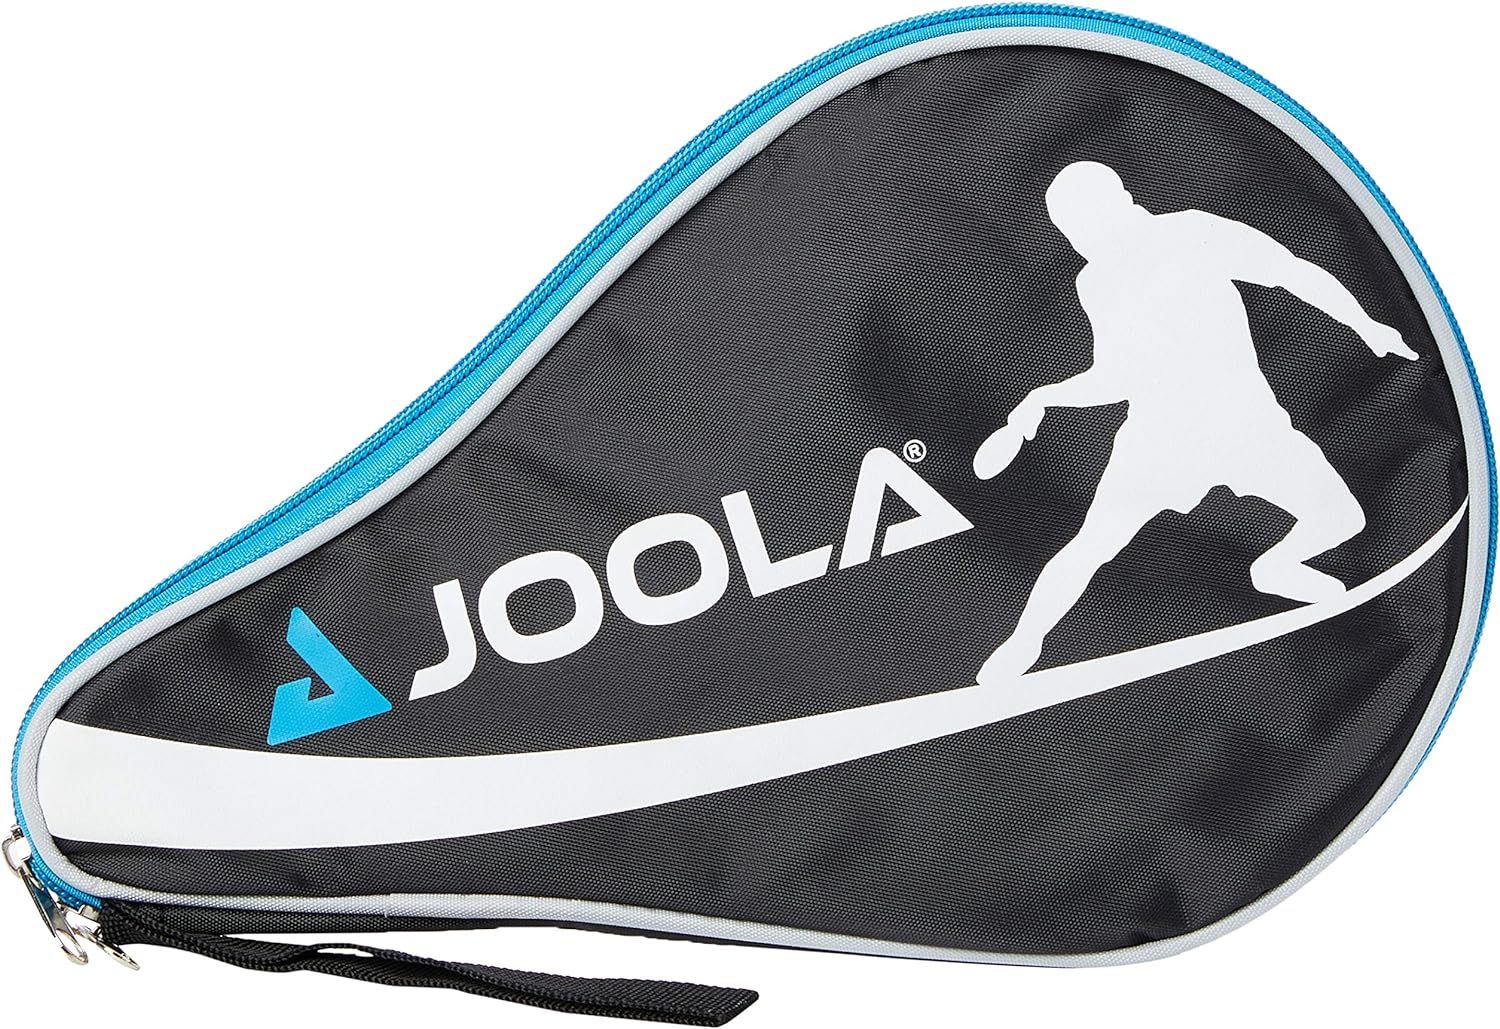 Les raquettes de tennis de table professionnelles JOOLA approuvées par l'ITTF INFINITY CARBON, MEGA CARBON et ROSSI CARBON pour les joueurs avancés et les compétitions - fitnessterapy